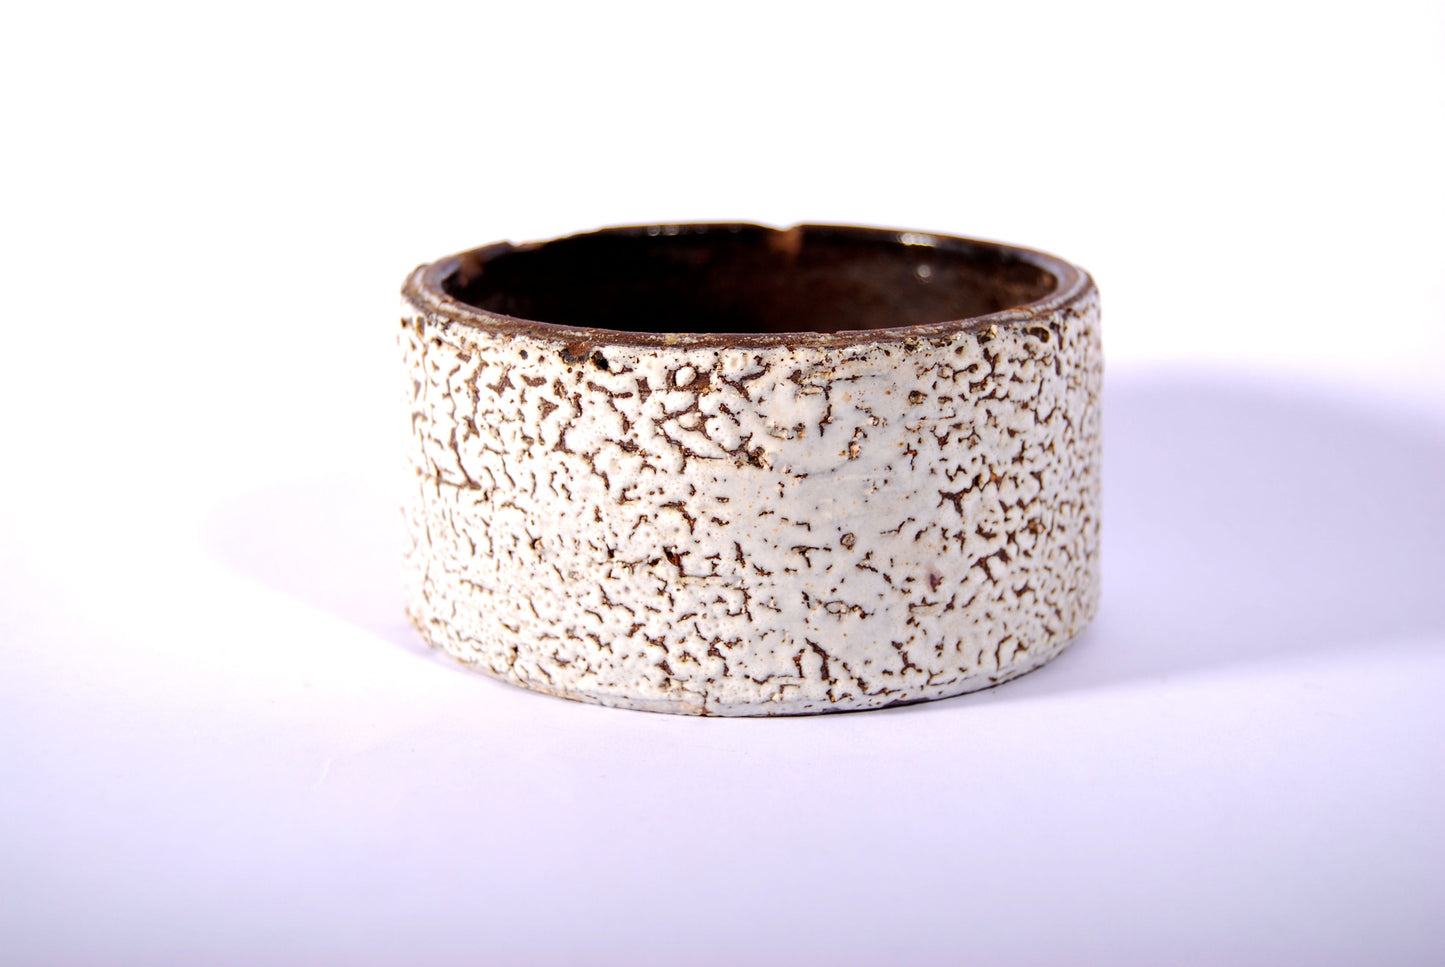 White & brown stoneware bowl